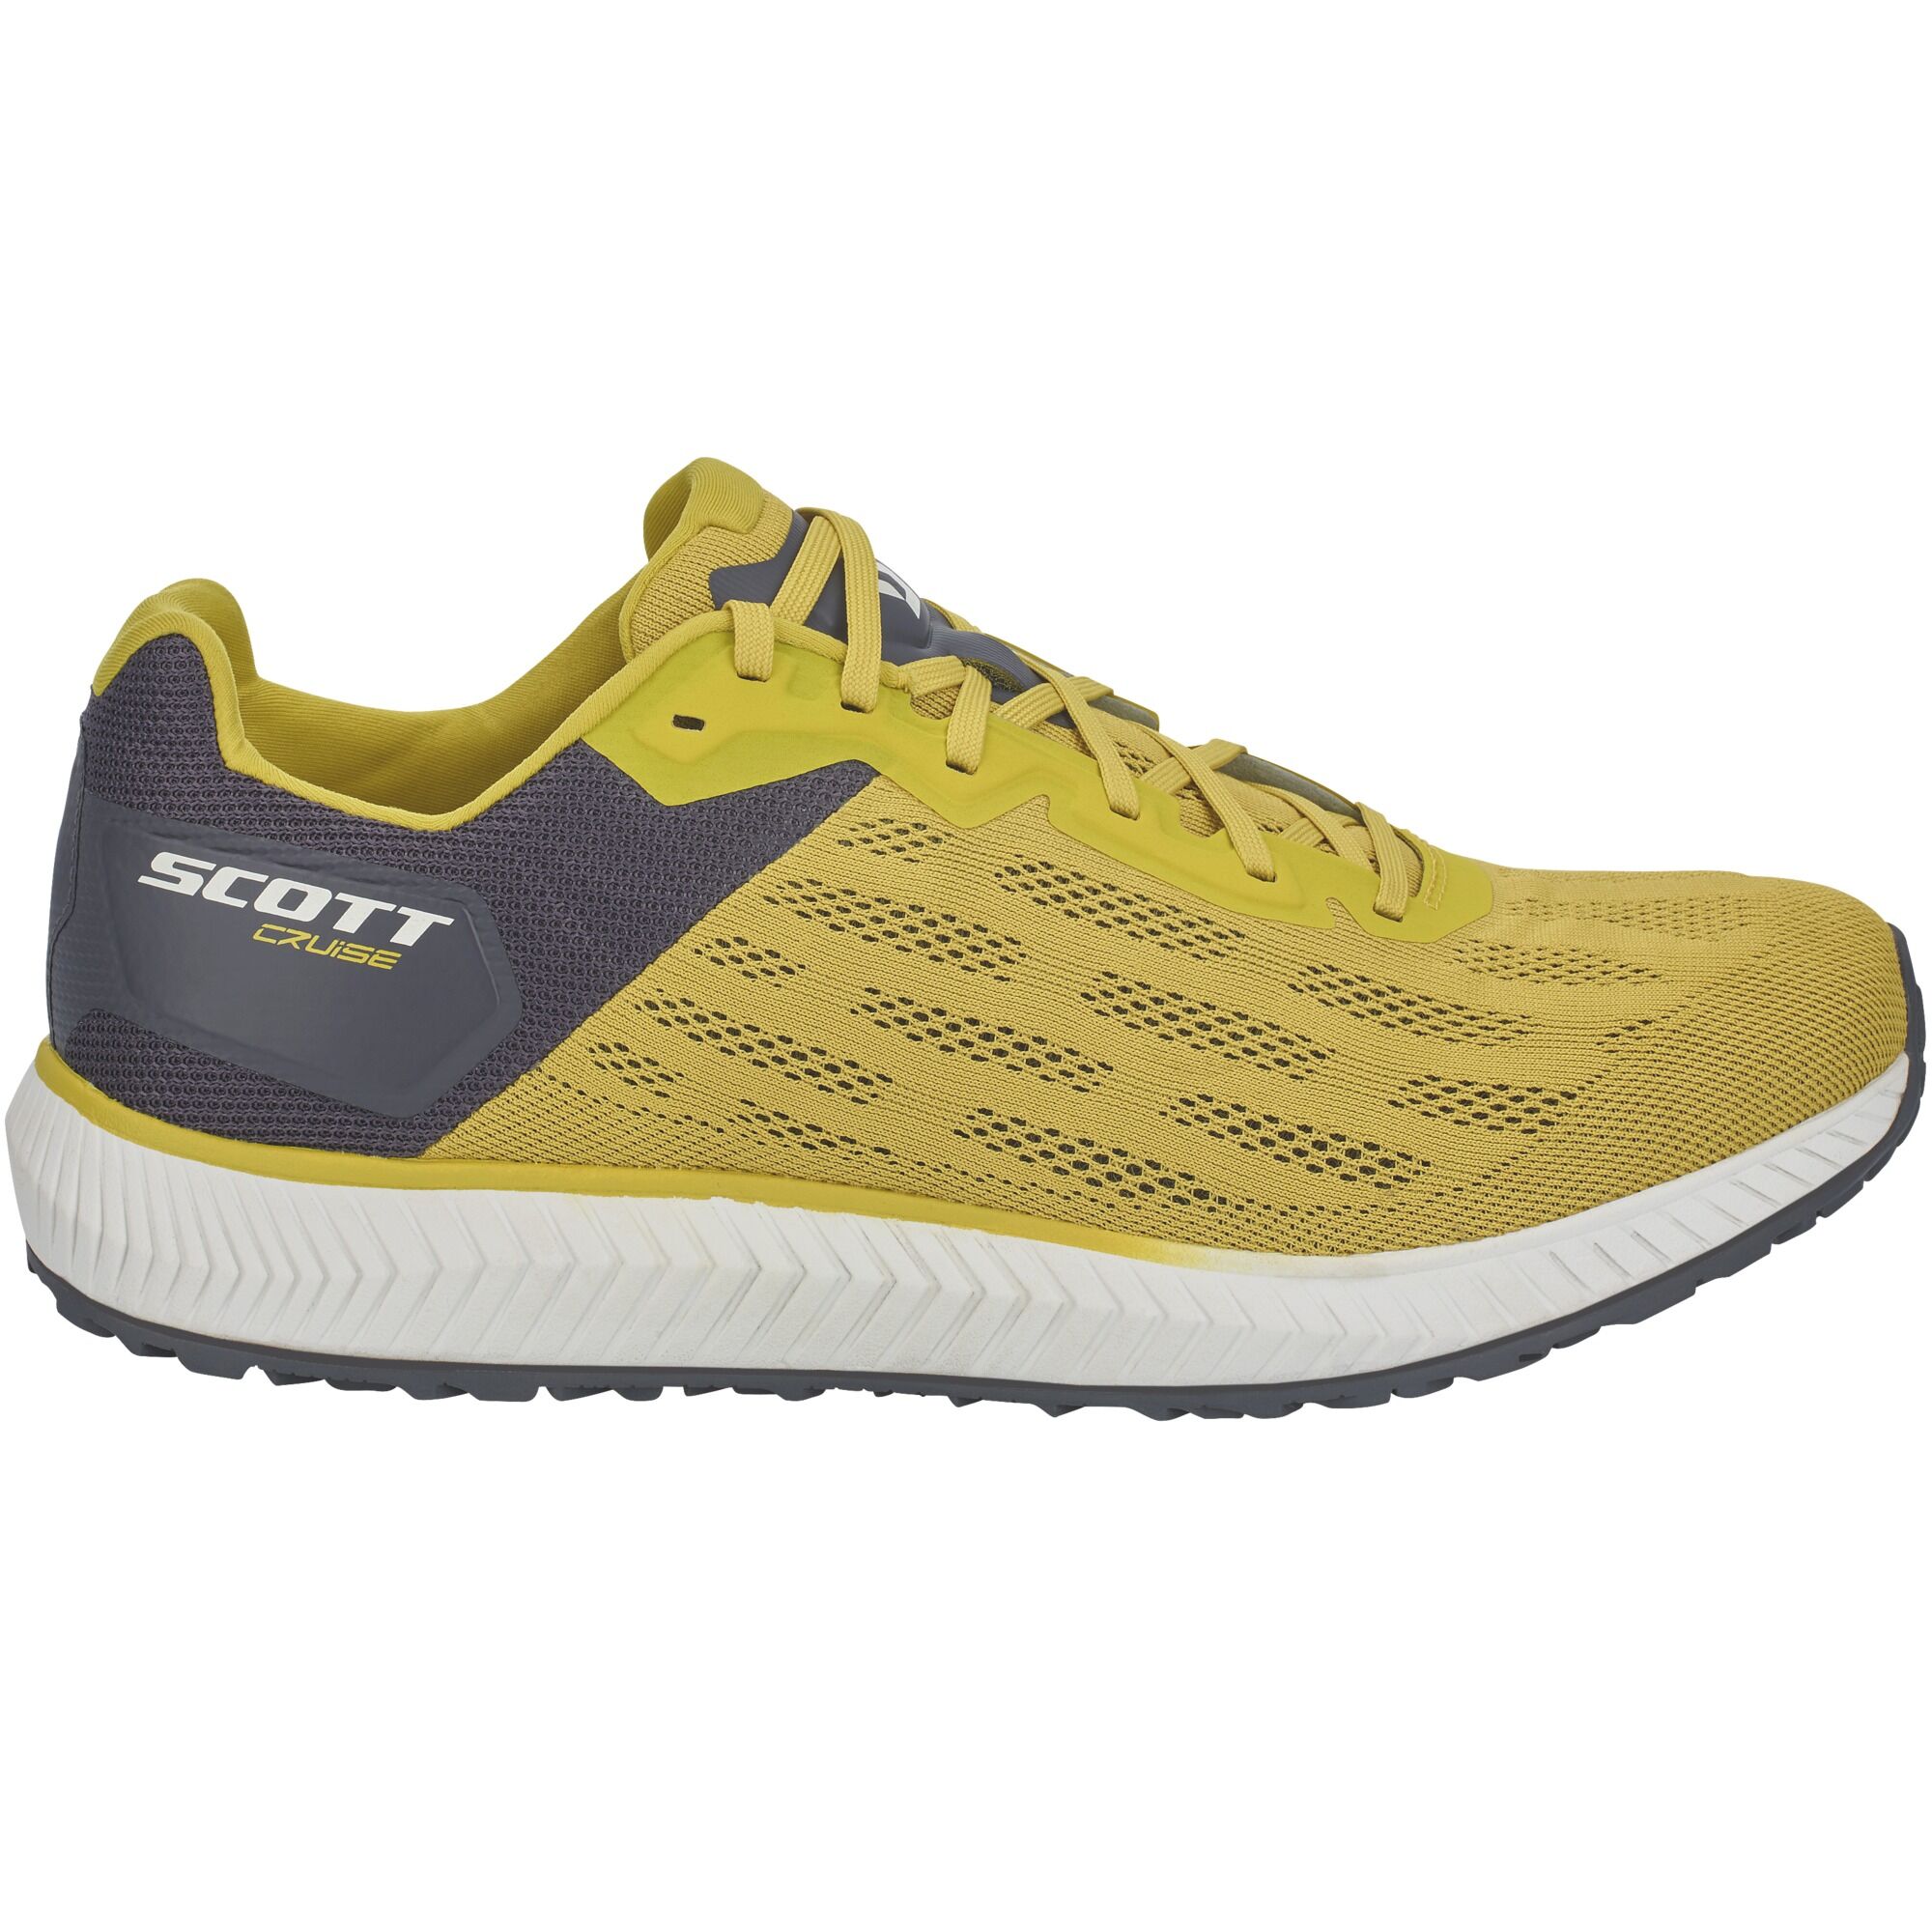 Scott Cruise - Running shoes - Men's